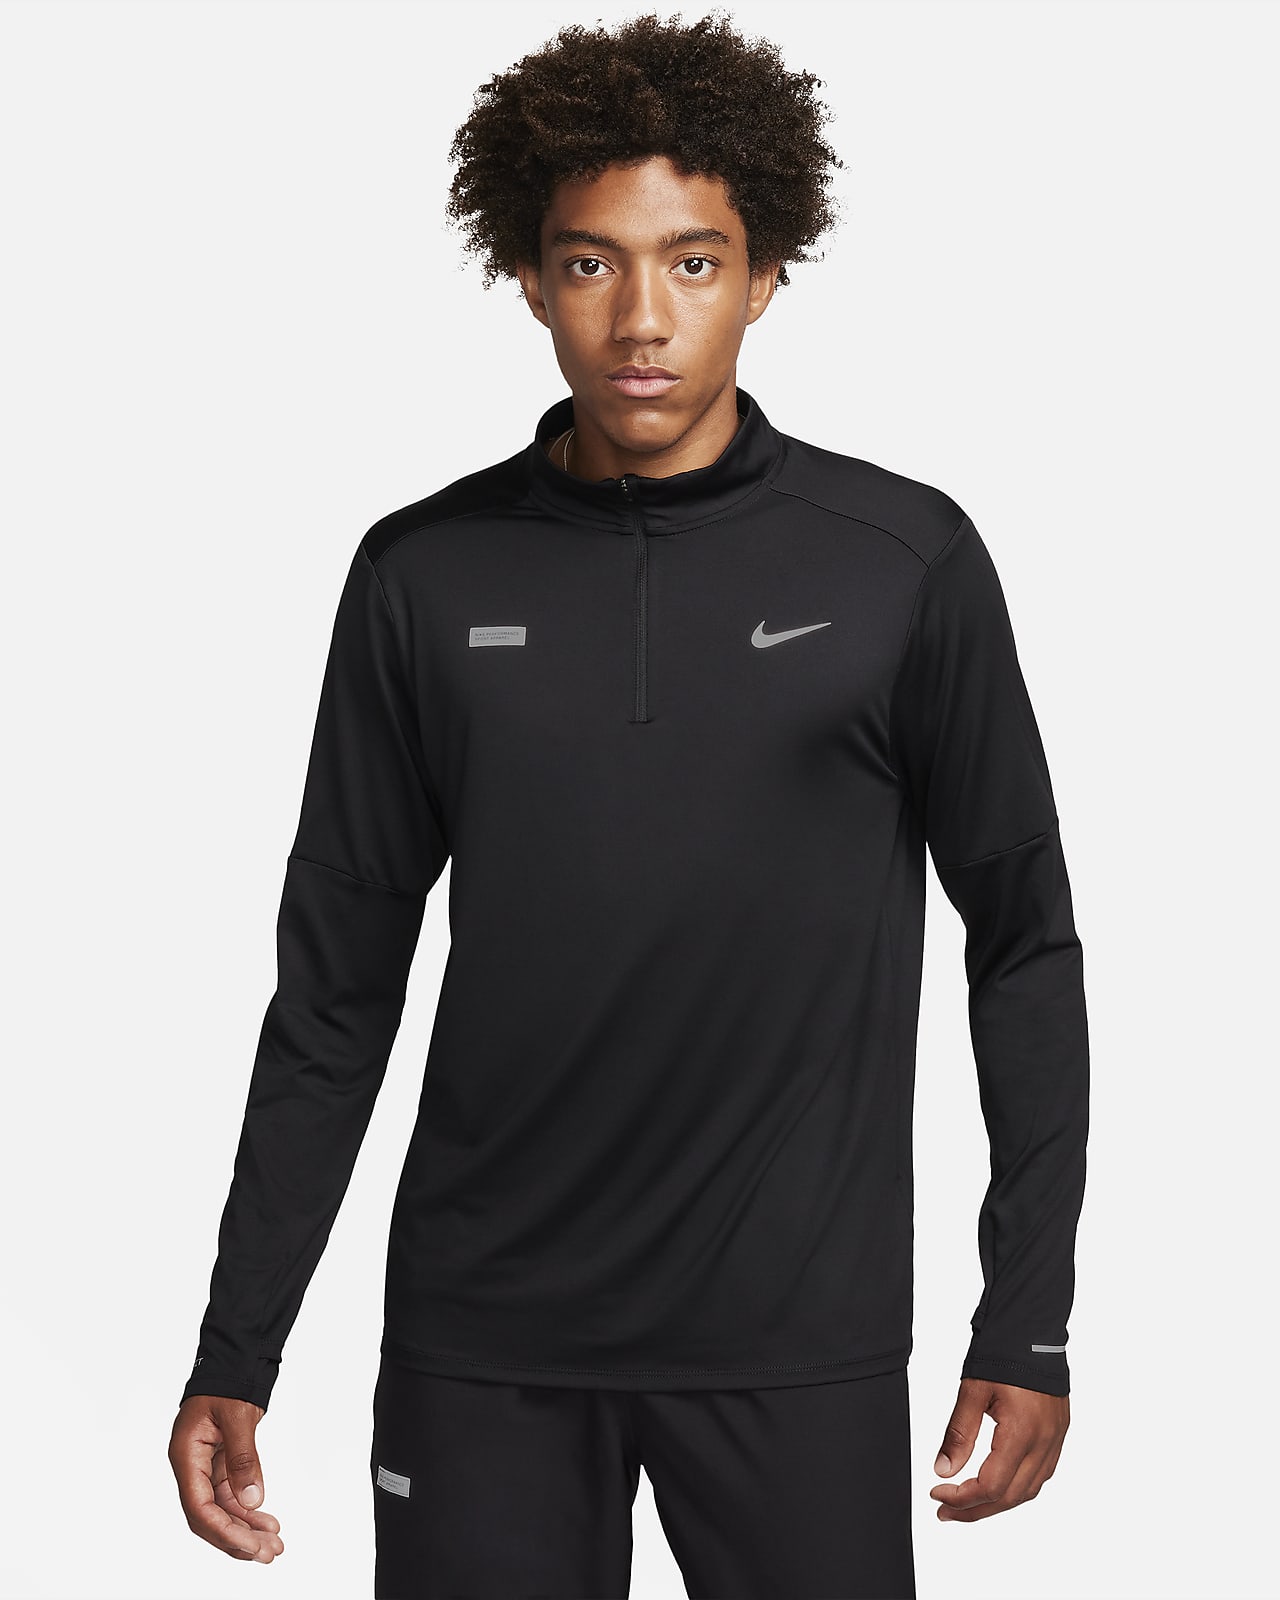 Nike Flash Part superior amb mitja cremallera Dri-FIT de running - Home